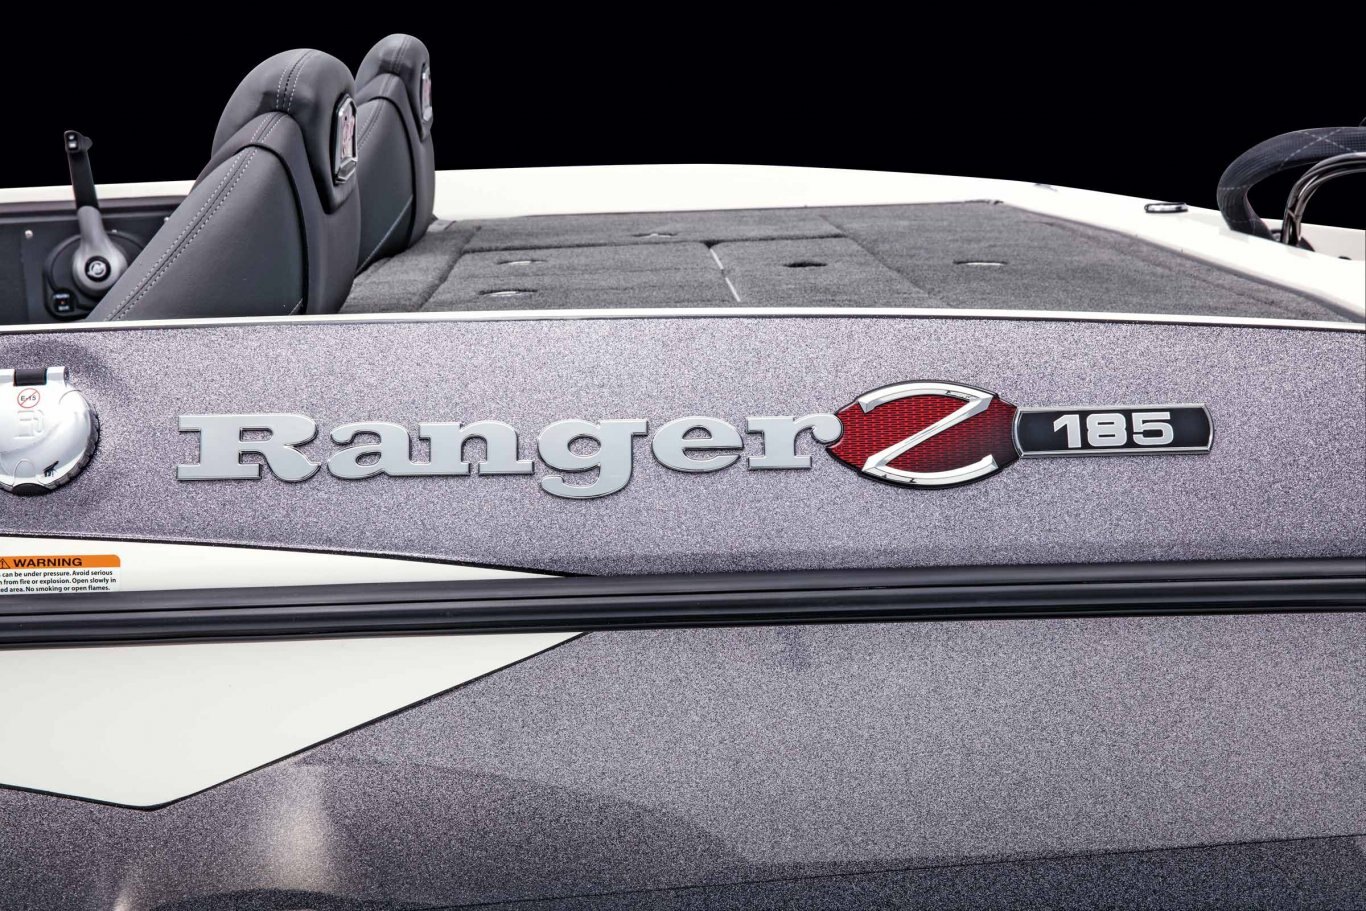 2022 Ranger Z185